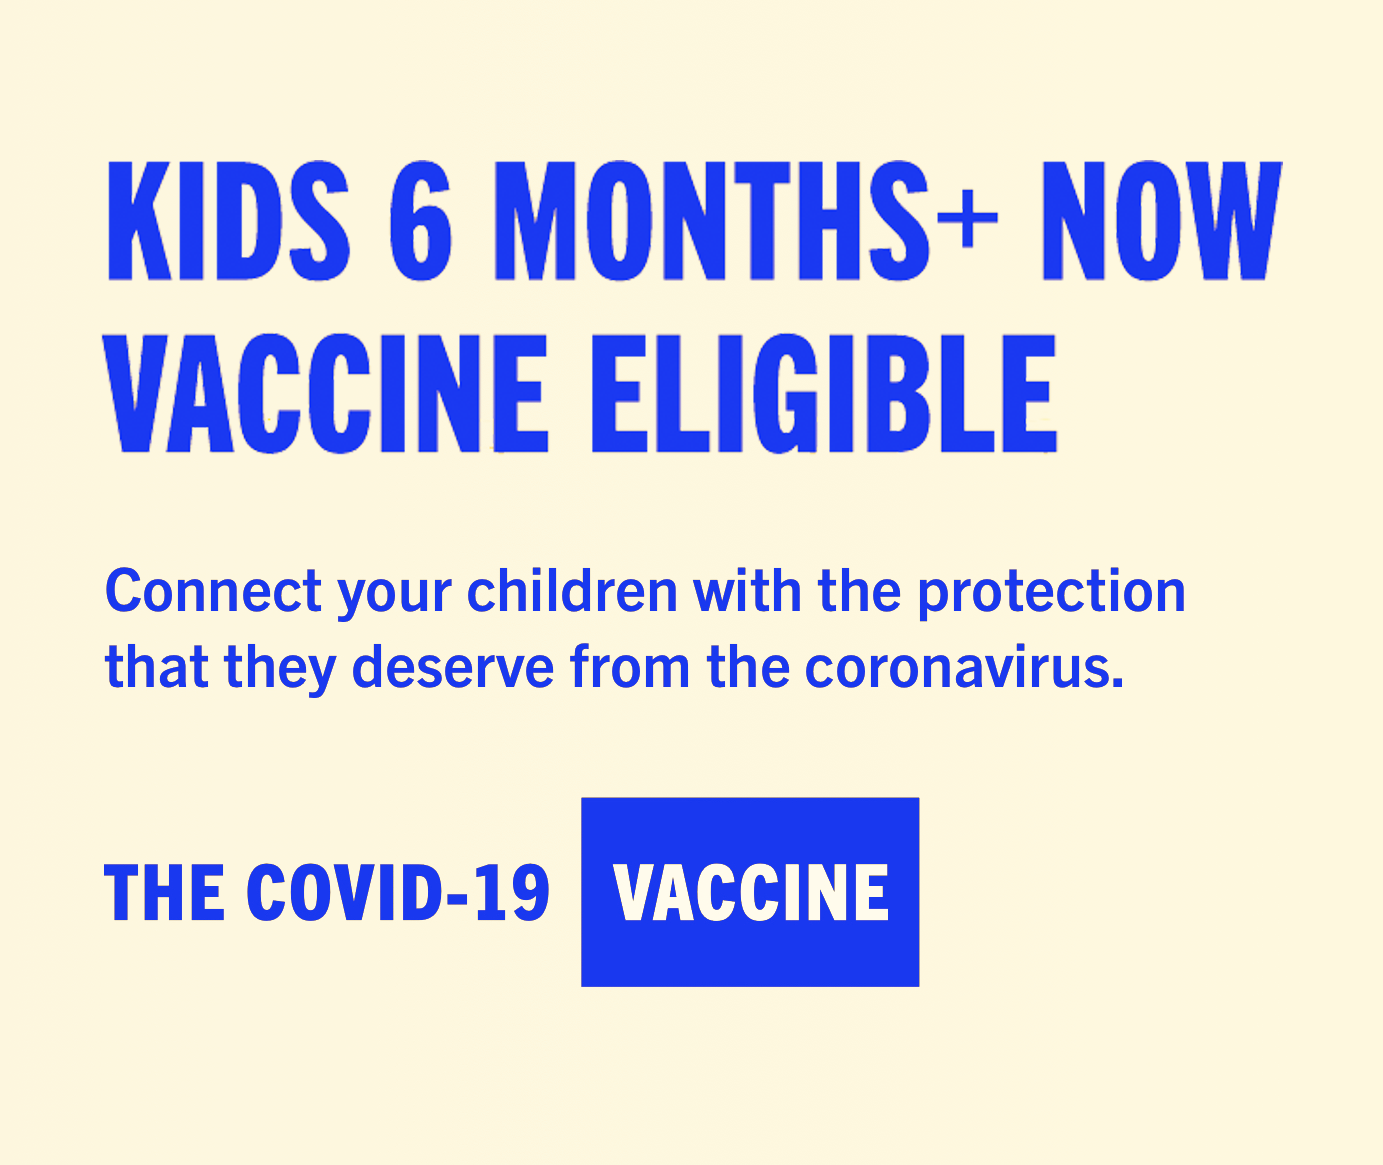 Kids 5+ now vaccine eligible